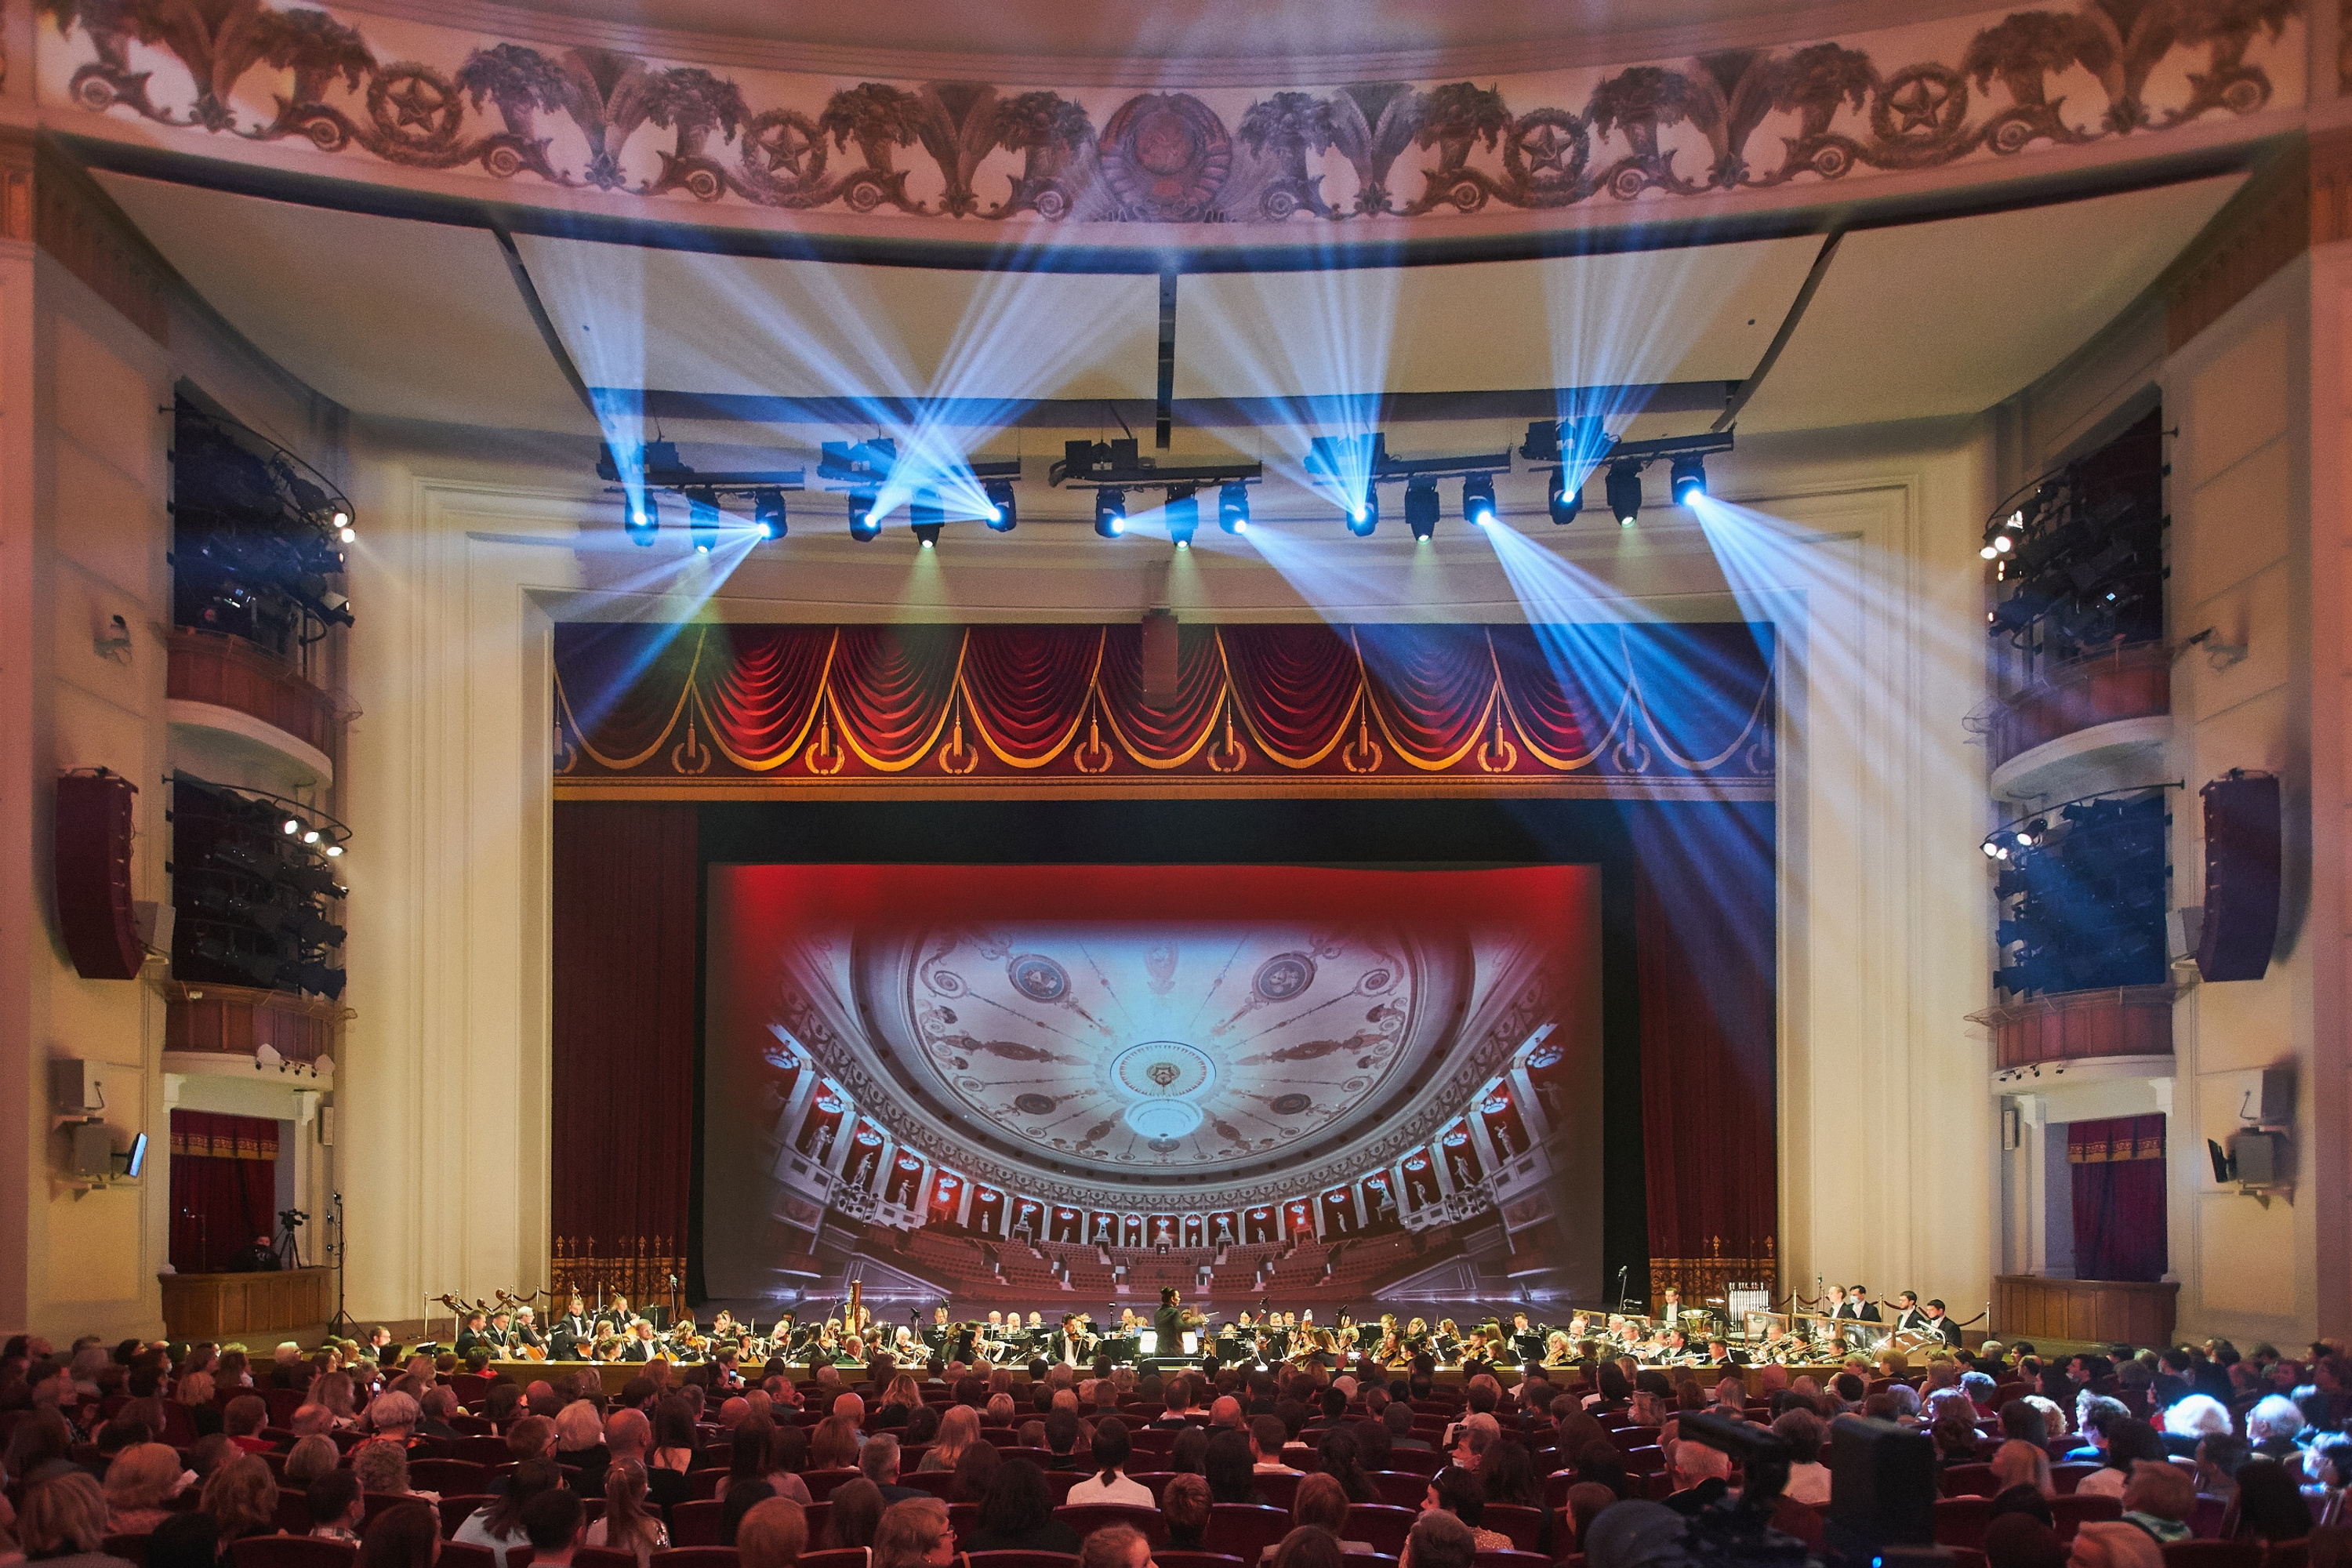 театр чихачева фото большого зала